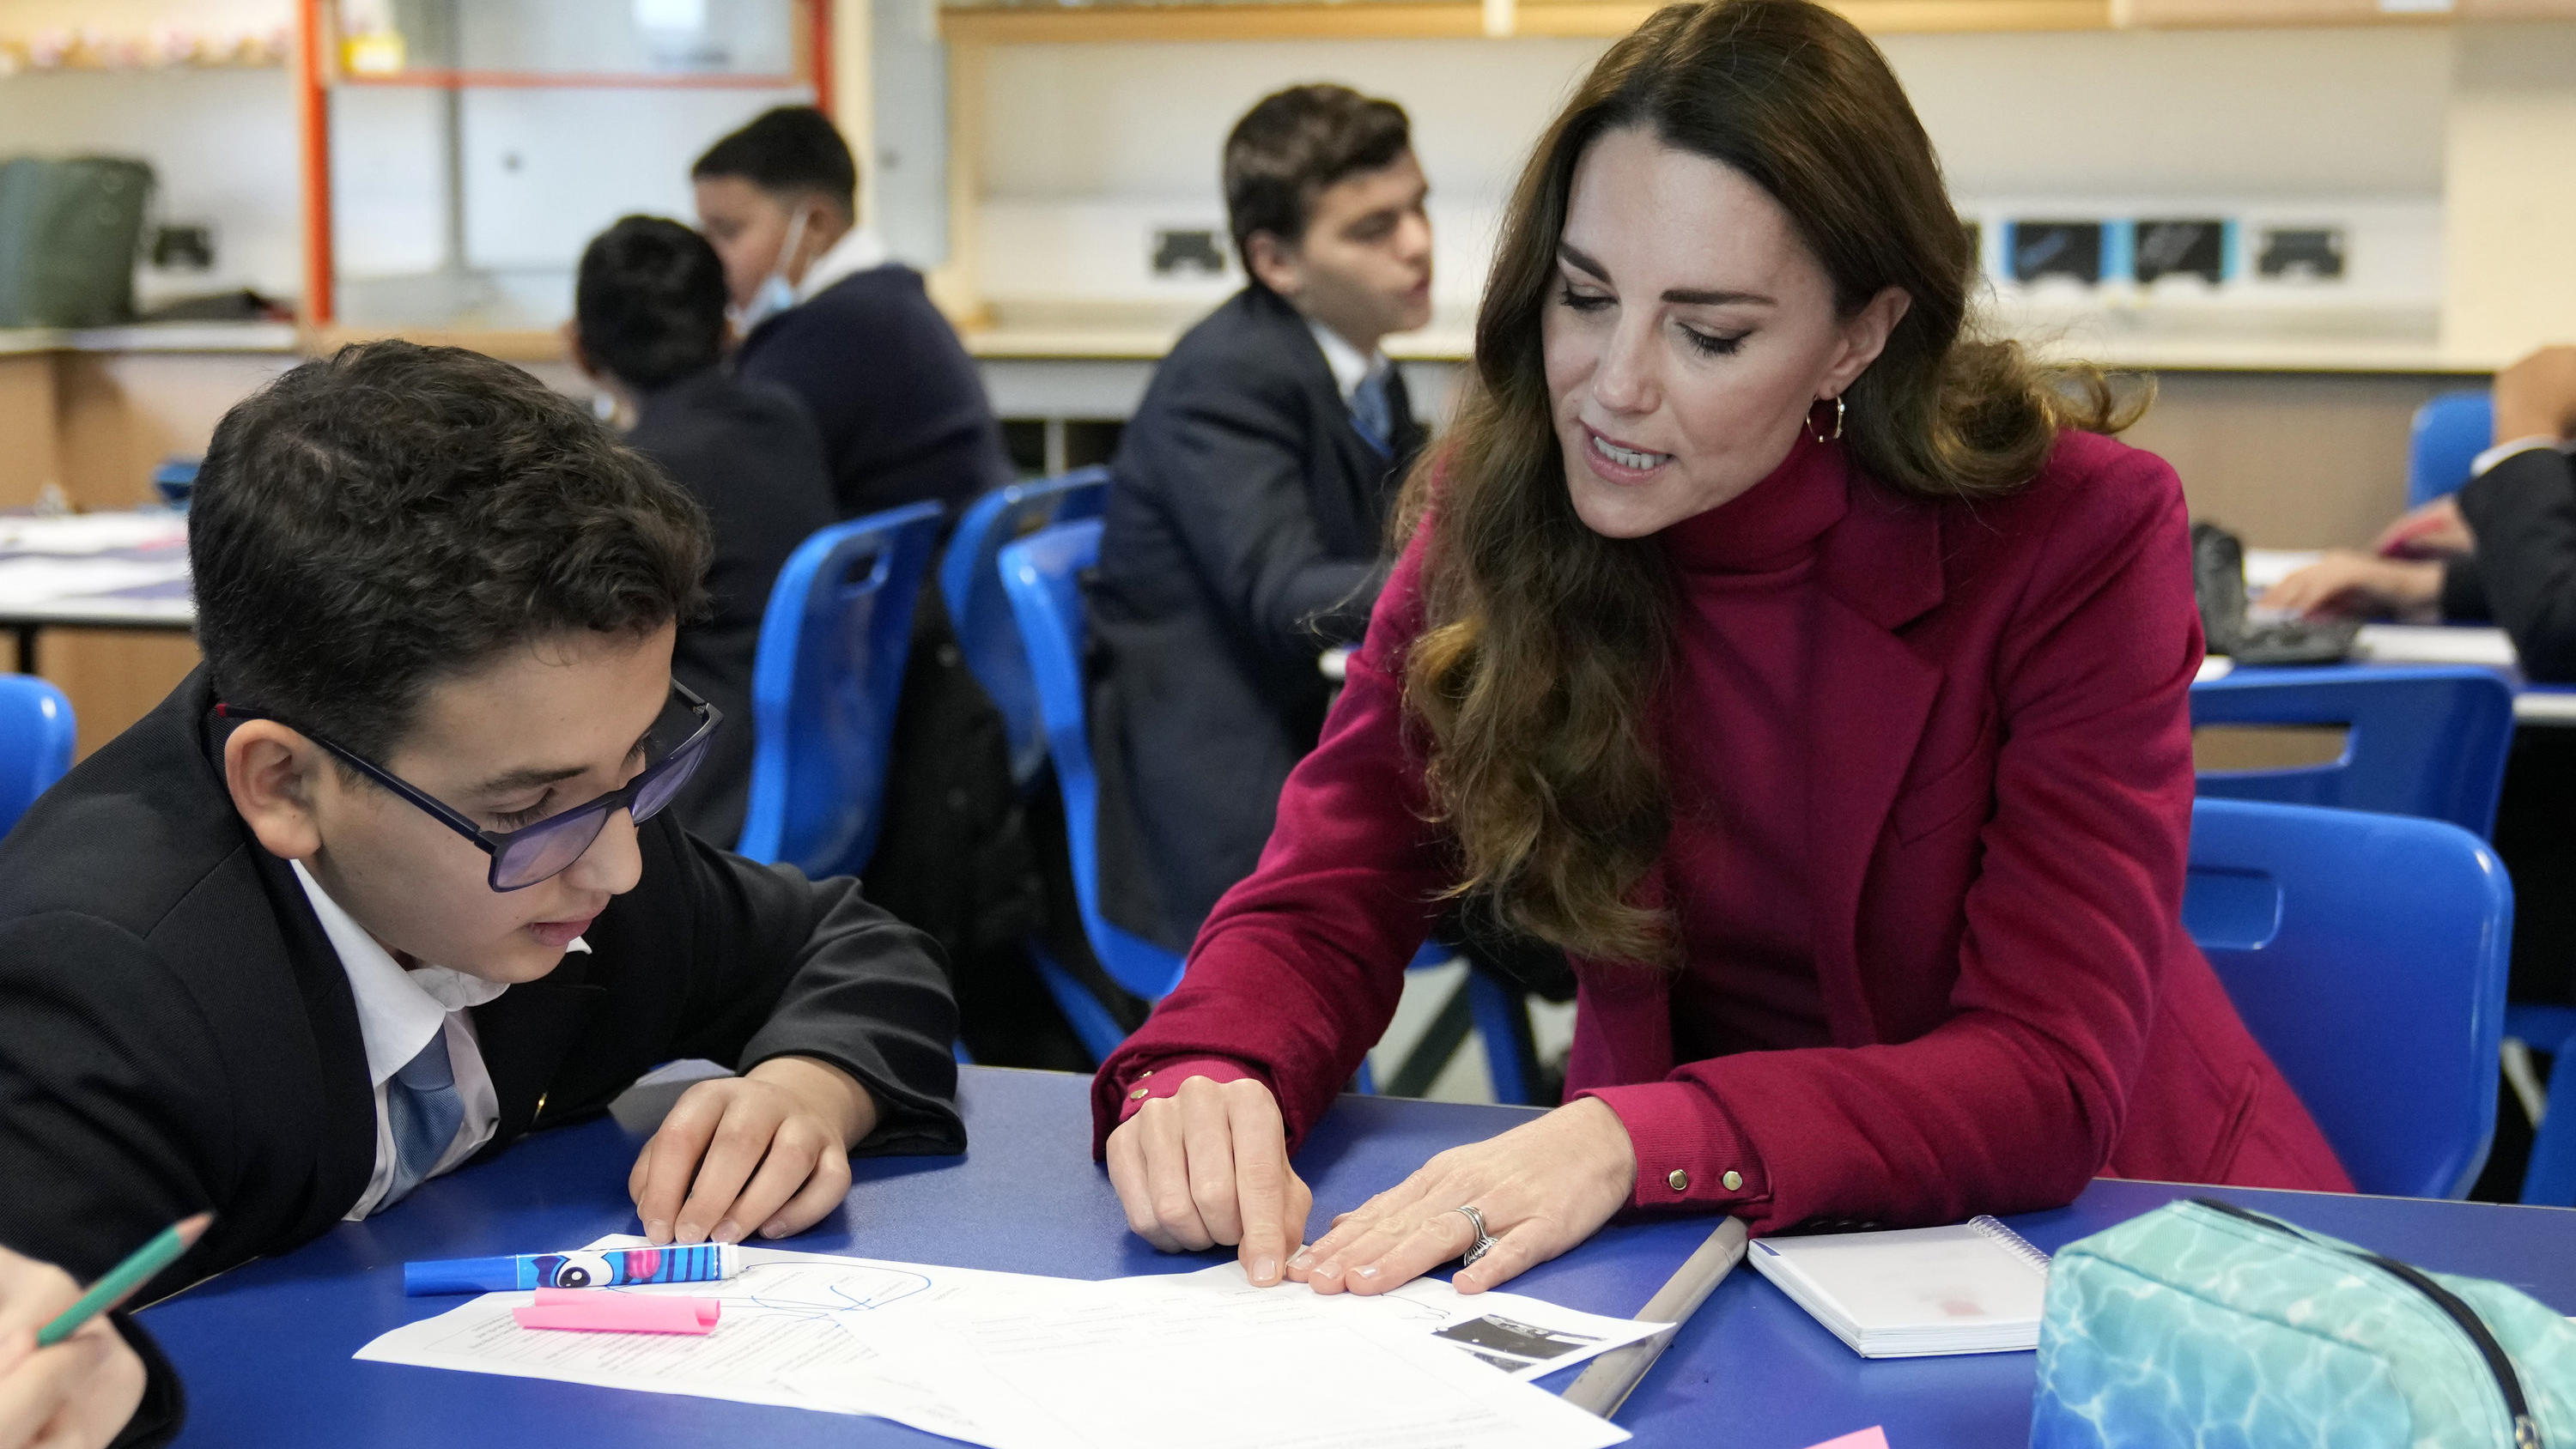 Kate spricht während eines Besuchs in der Tower Hill High School mit einem Schüler. Die Herzogin nahm dort an einem naturwissenschaftlichen Unterricht teil.